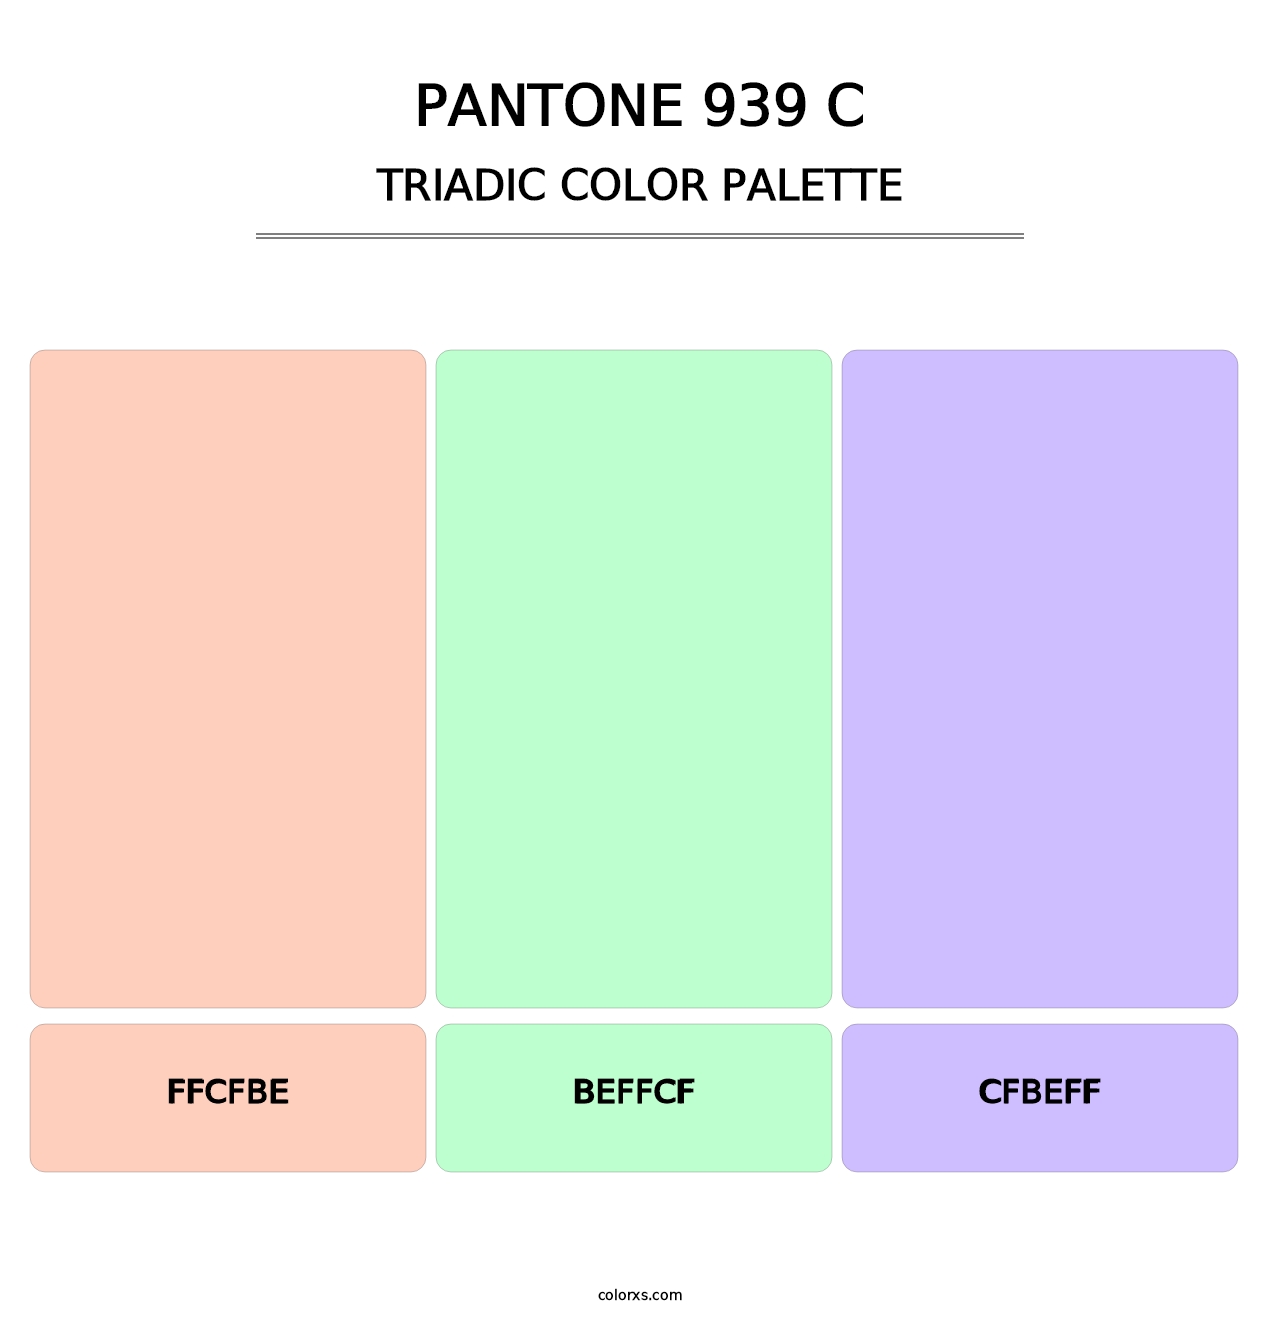 PANTONE 939 C - Triadic Color Palette